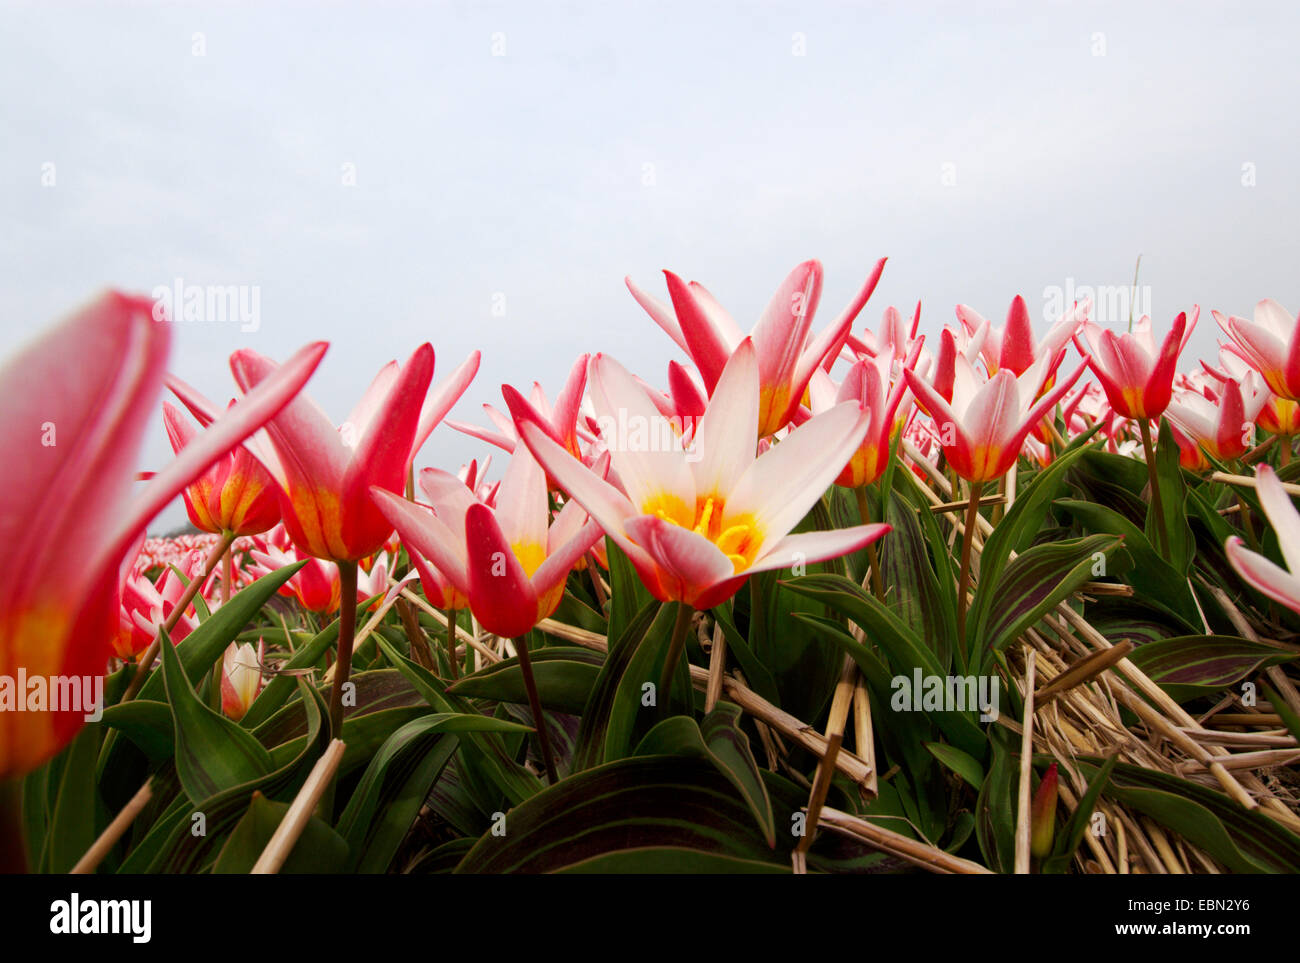 common garden tulip (Tulipa gesneriana), field of tulips, Netherlands Stock Photo